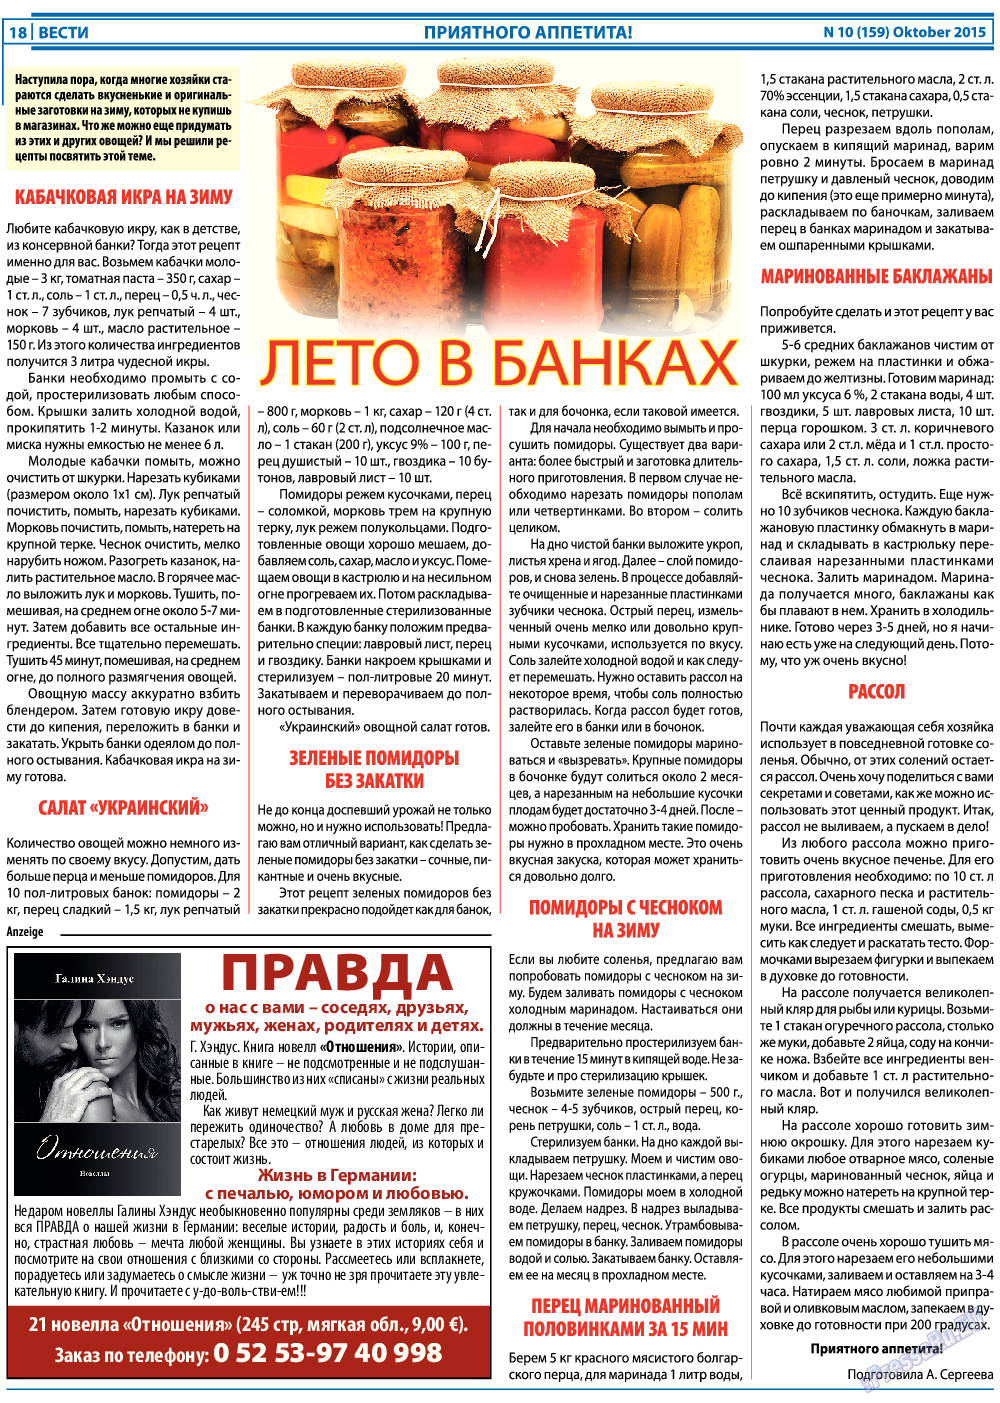 Вести, газета. 2015 №10 стр.18